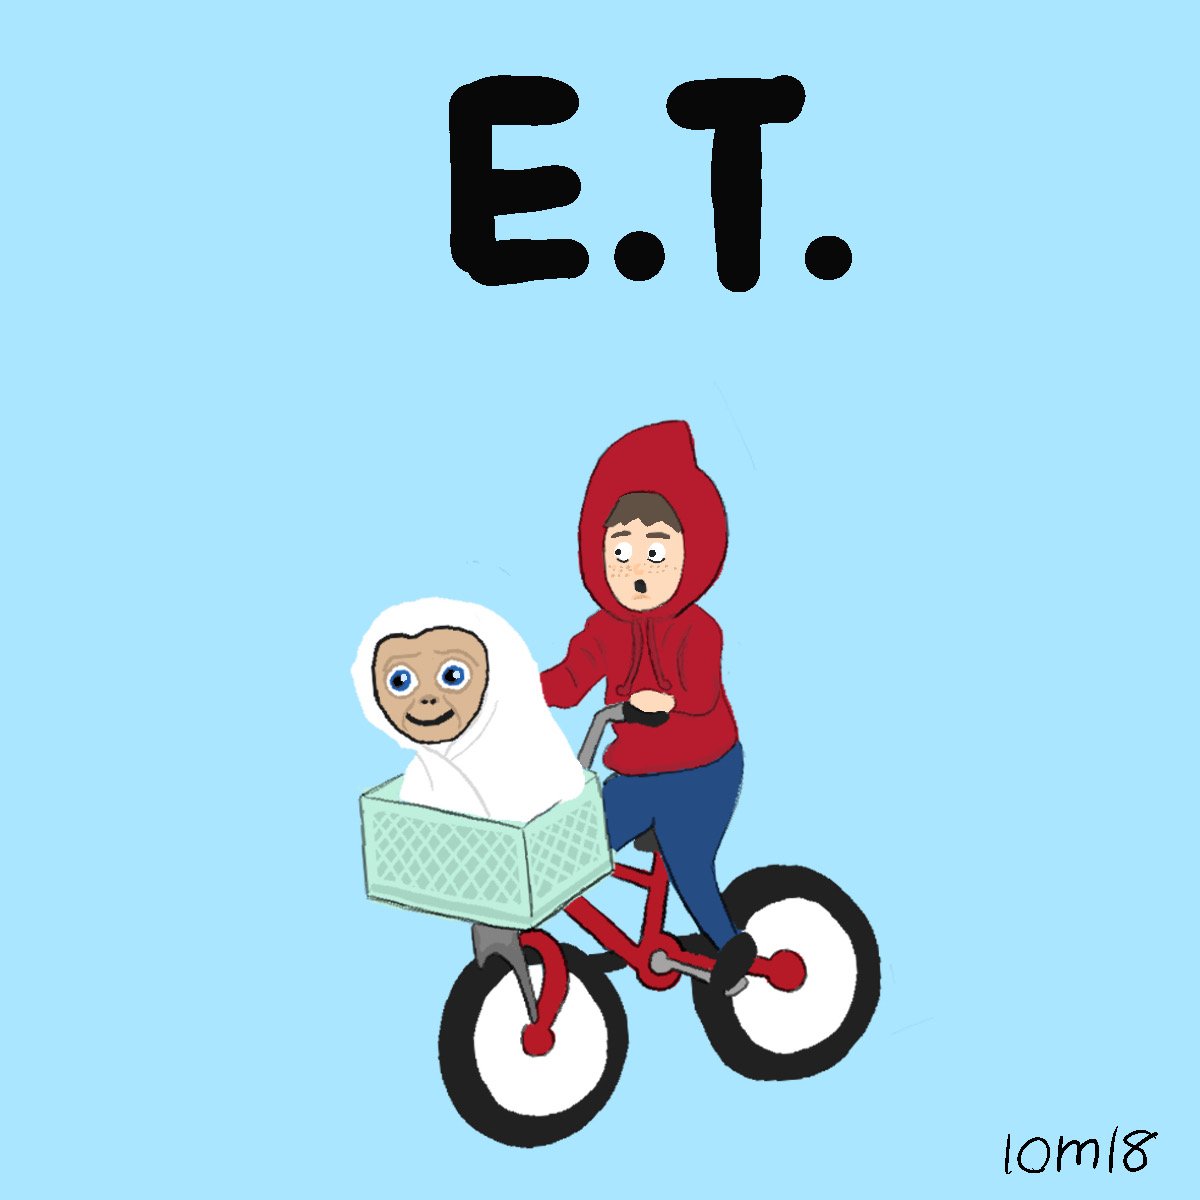 なんともいえないうさぎ E T 空飛ぶ自転車欲しい Movie 映画 Et イラスト スティーブンスピルバーグ T Co Vav5tbiwsp Twitter